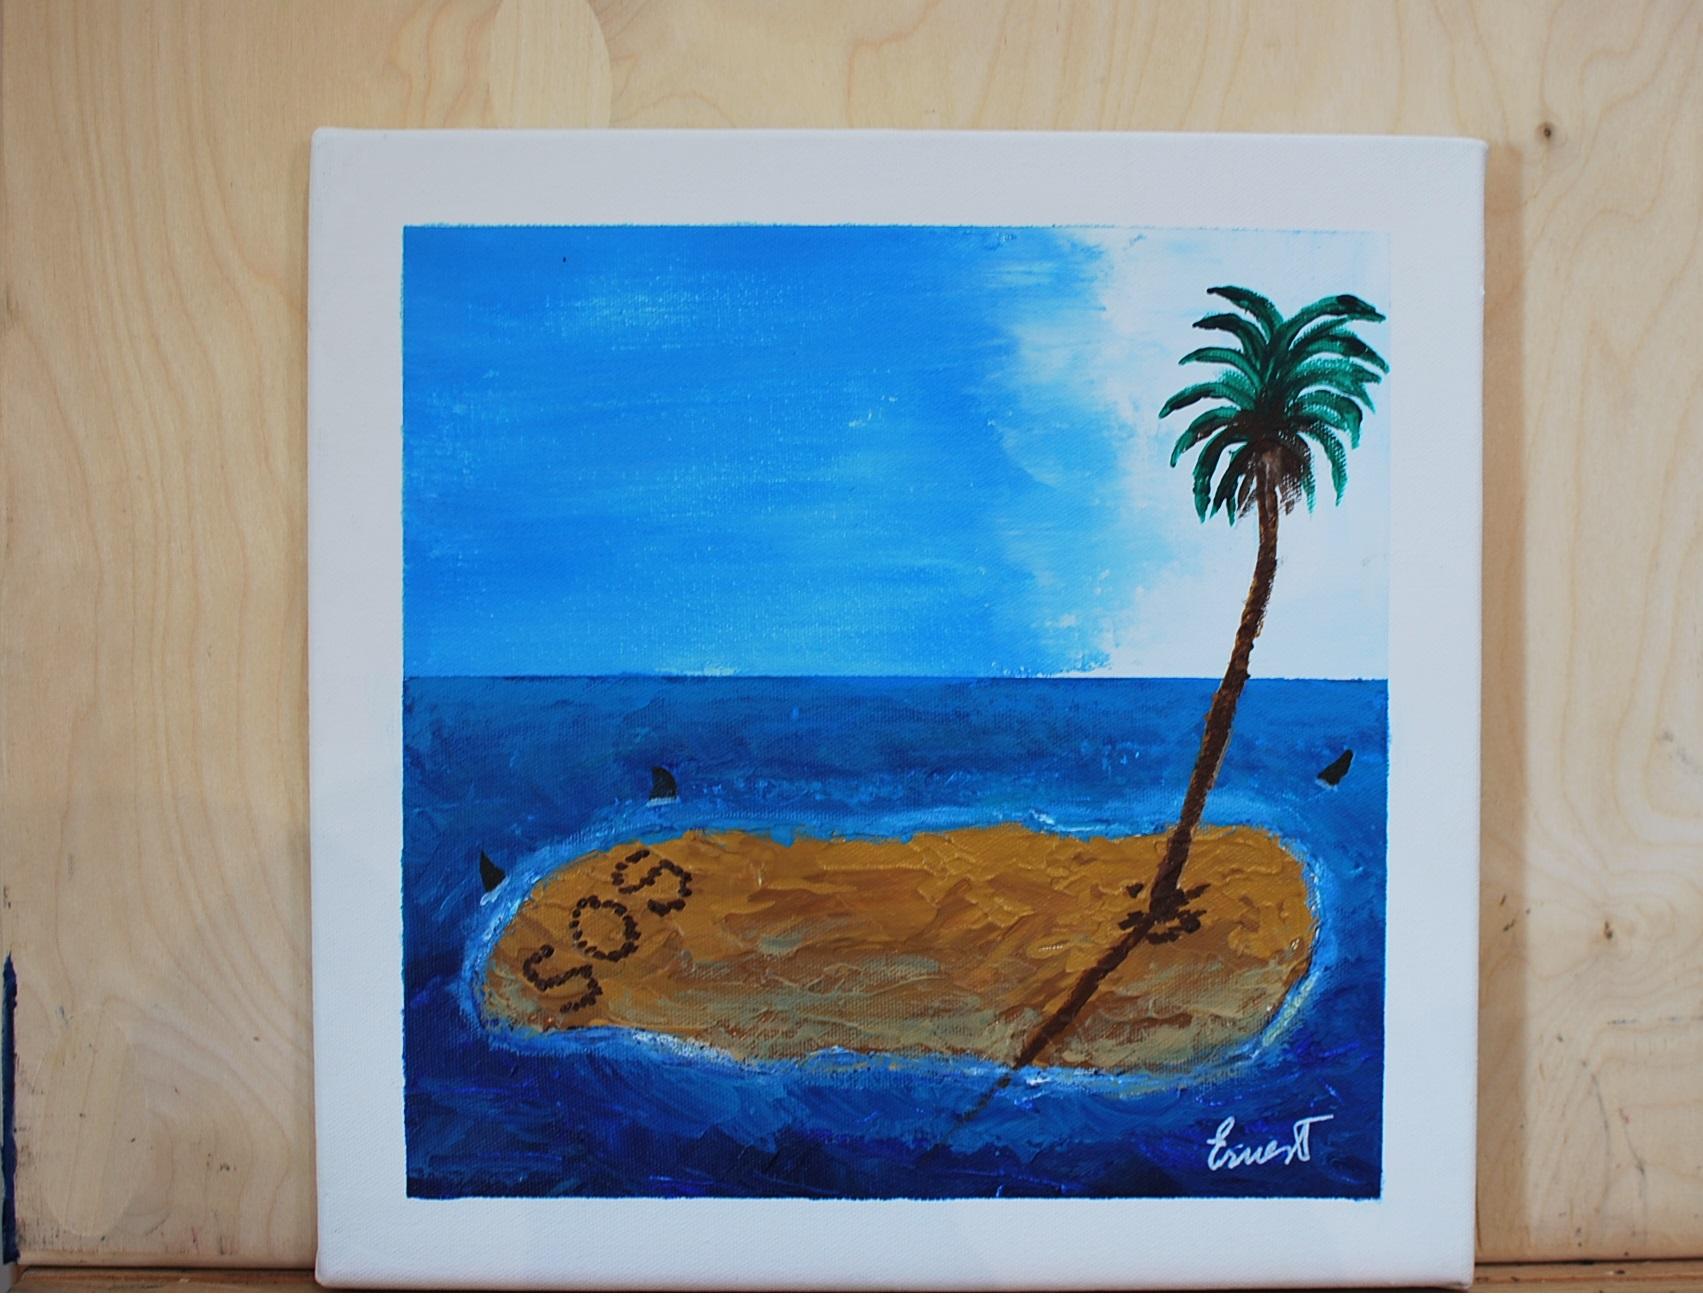 La isla - Painting by Ernest Carneado Ferreri